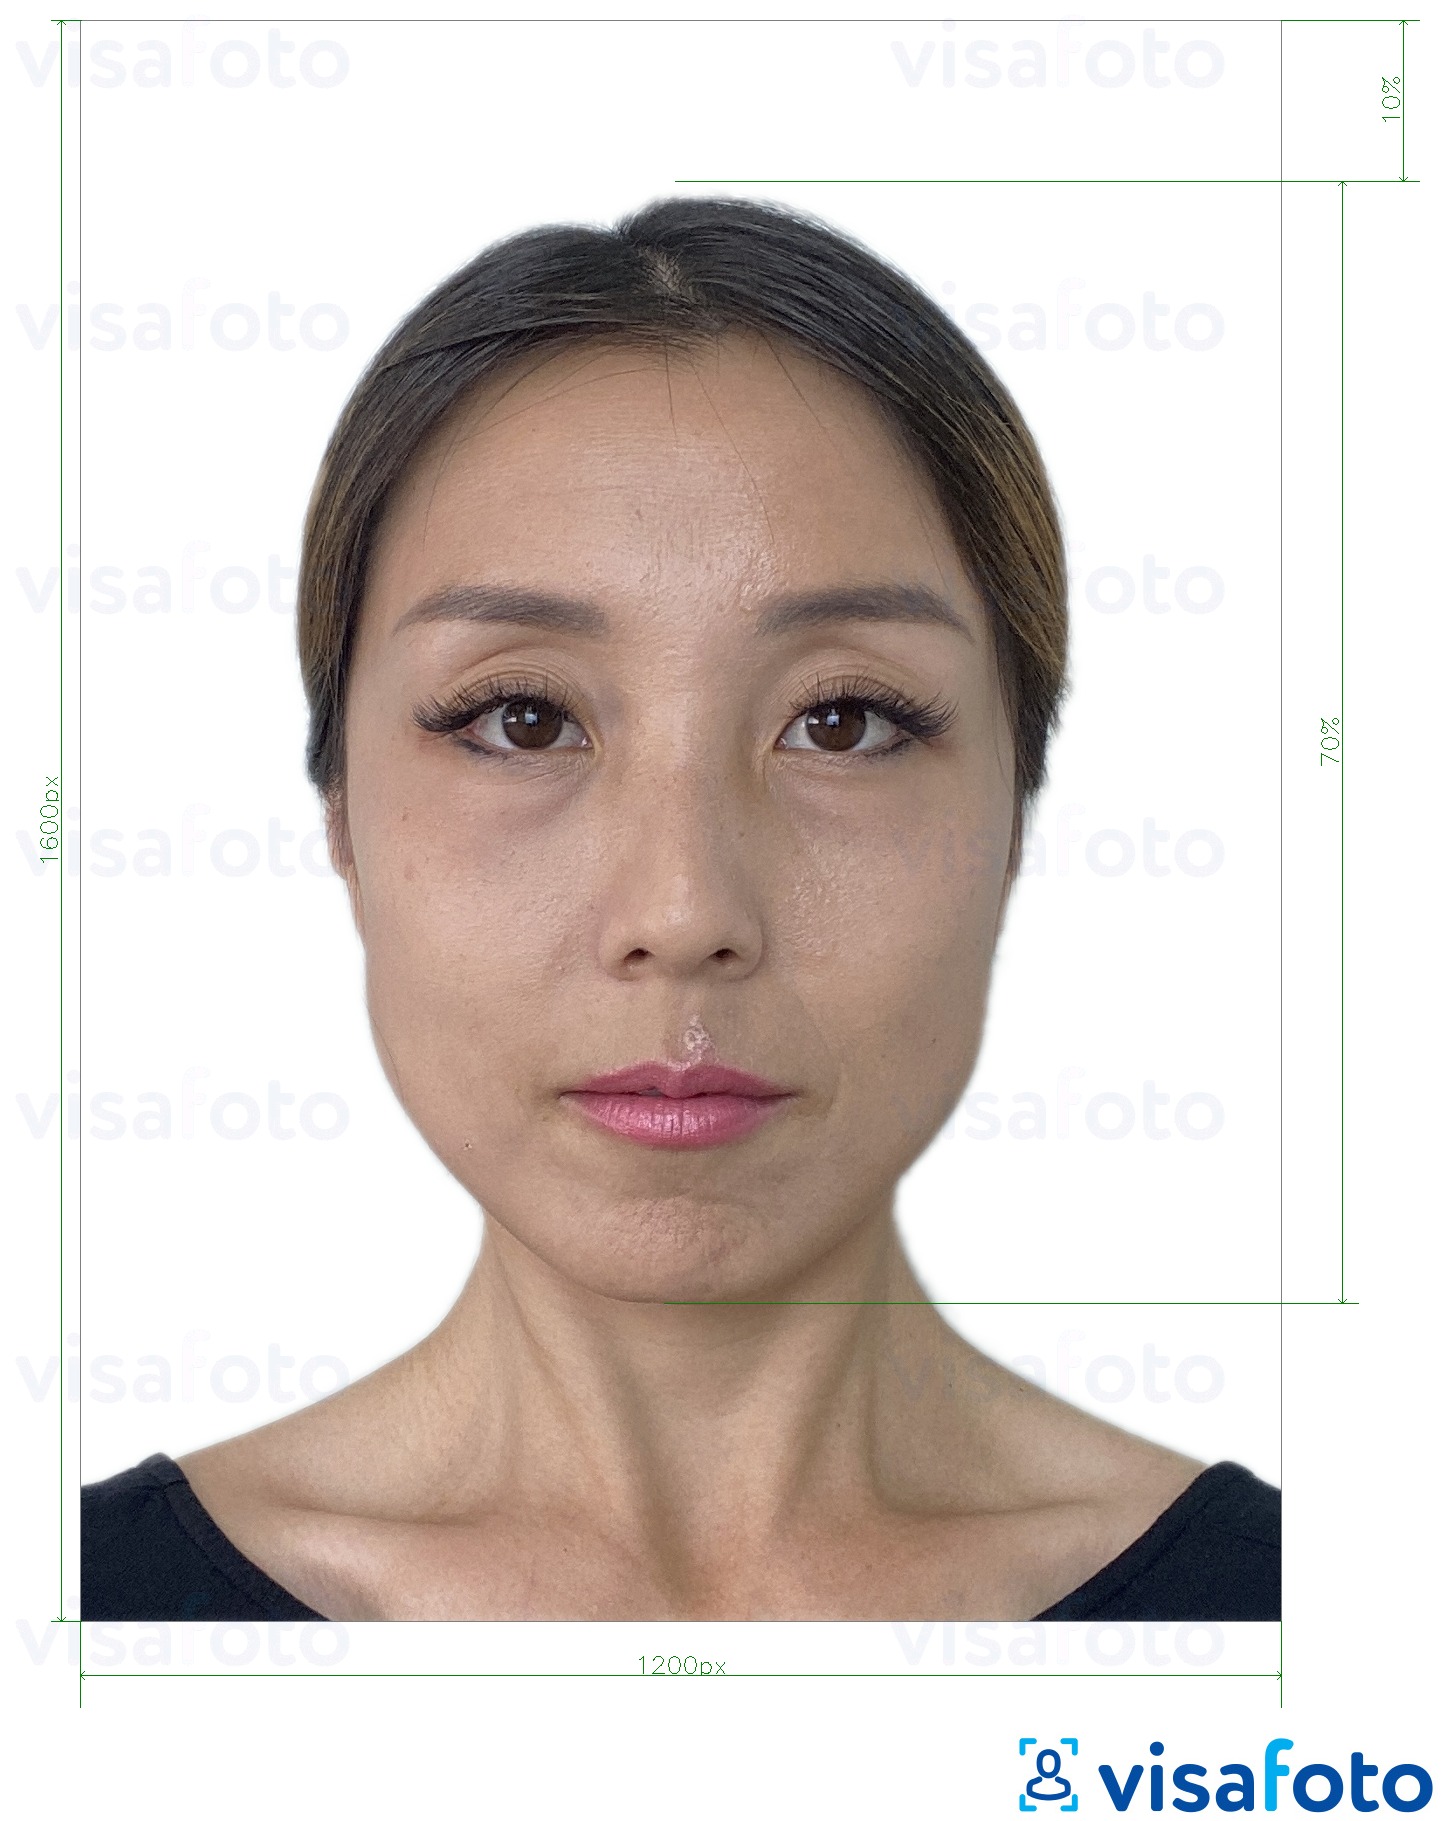 सटीक आकार विनिर्देश के साथ हांगकांग ऑनलाइन ई-पासपोर्ट 1200x1600 पिक्सल के लिए तस्वीर का उदाहरण